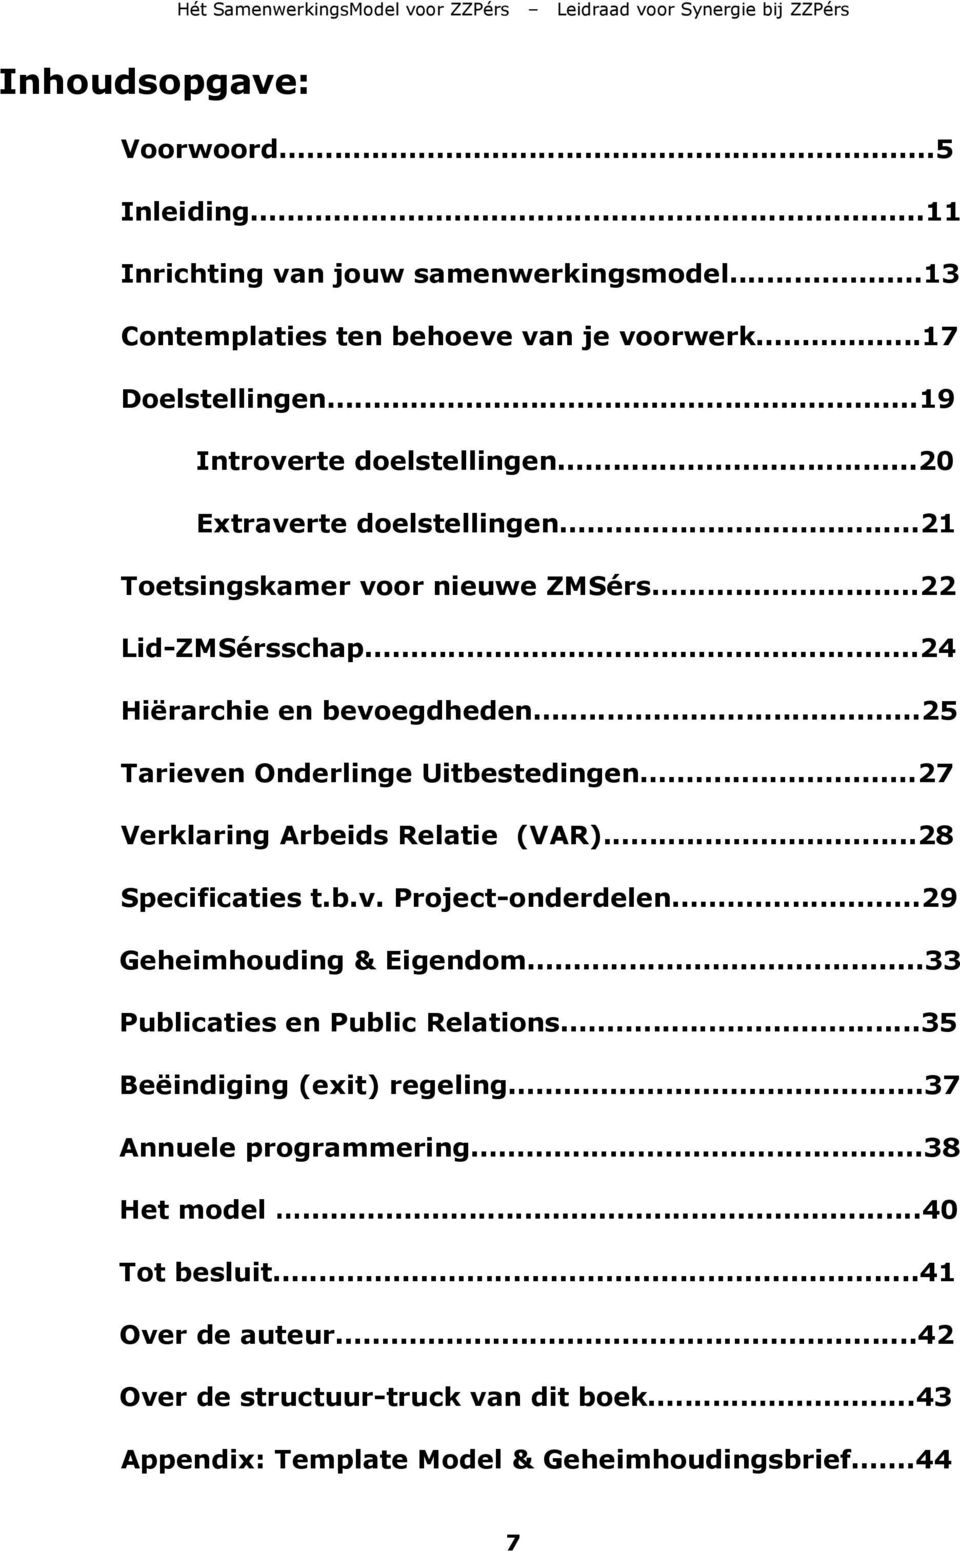 ..25 Tarieven Onderlinge Uitbestedingen...27 Verklaring Arbeids Relatie (VAR)...28 Specificaties t.b.v. Project-onderdelen...29 Geheimhouding & Eigendom.